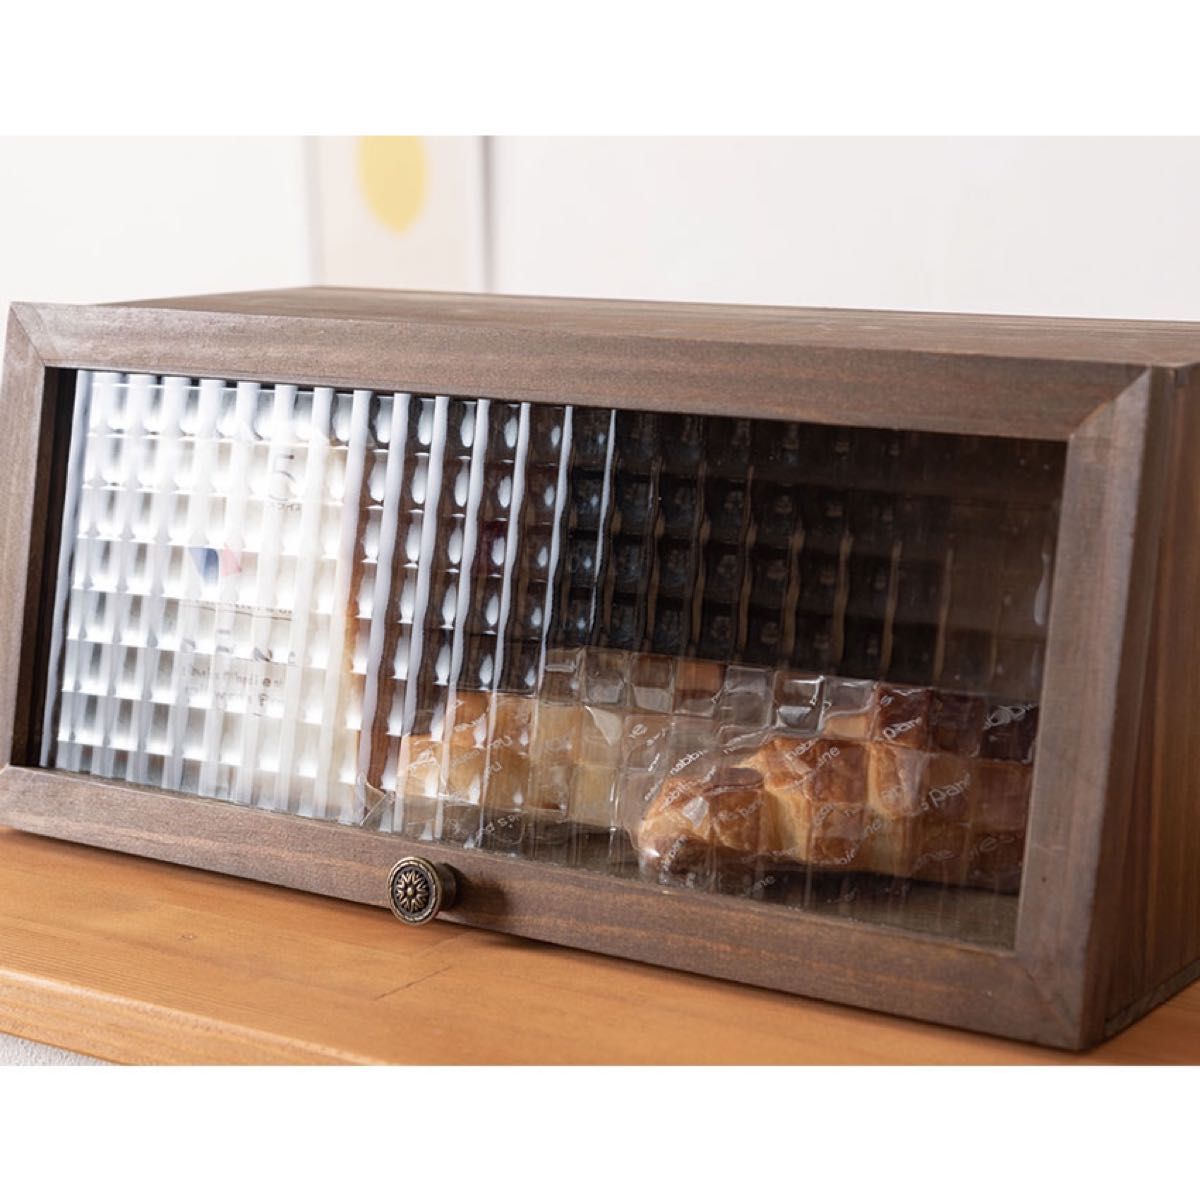 木製 ブレッドケース アンティーク調 パンケース 食パン ブレッド モザイクガラス ブレッド収納 キッチン雑貨 北欧 調味料入れ